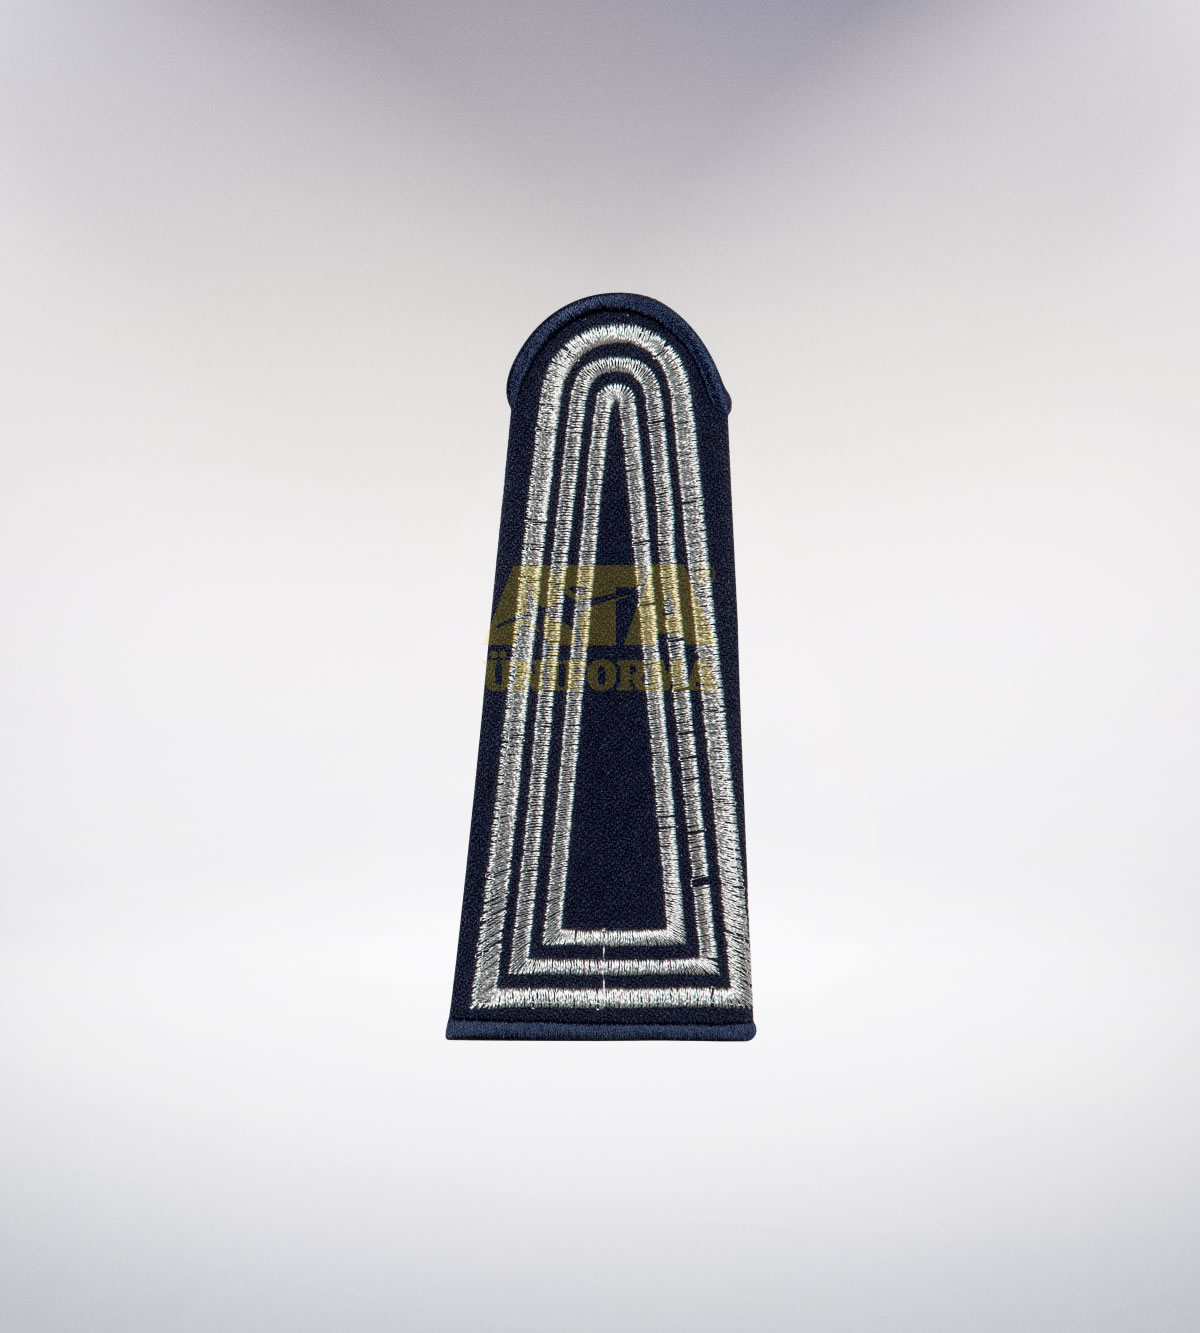 ATA 201 - Zabıta tören takımı - zabıta elbiseleri | zabıta üniformaları | zabıta kıyafetleri 